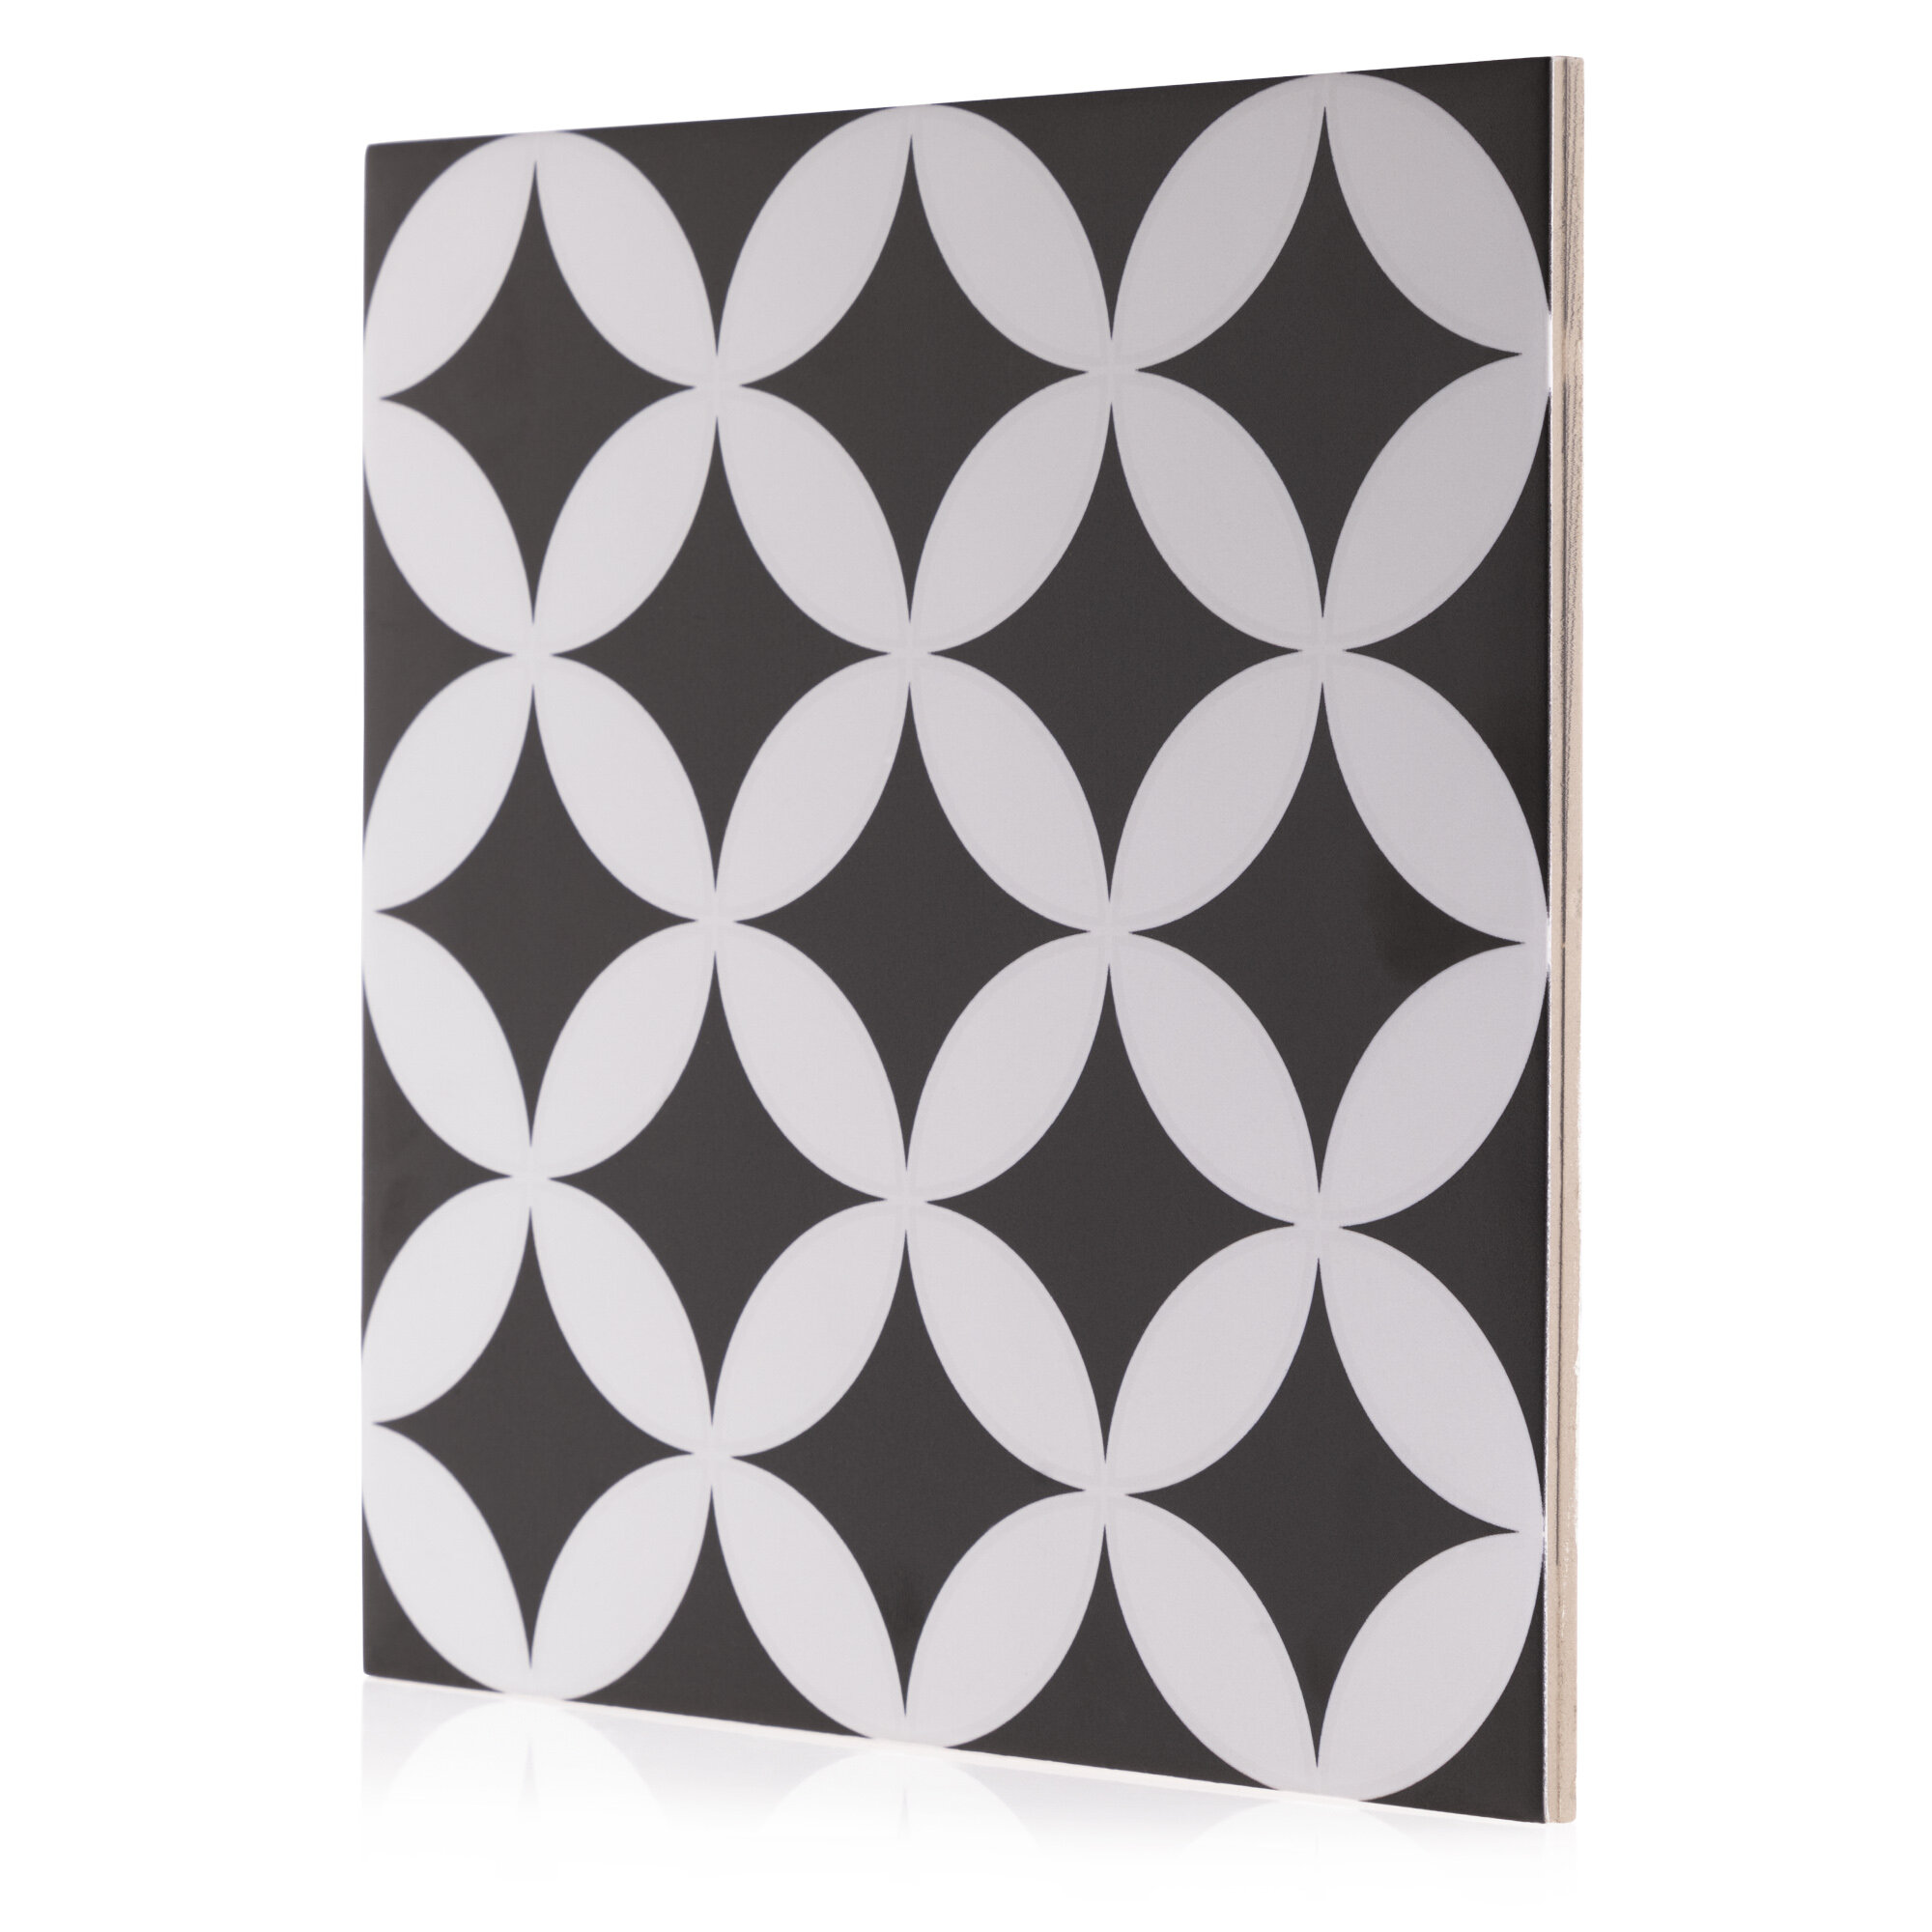 Hører til Vores firma Overskyet Industry Tile Beveled Porcelain Patterned Wall & Floor Tile & Reviews |  Wayfair